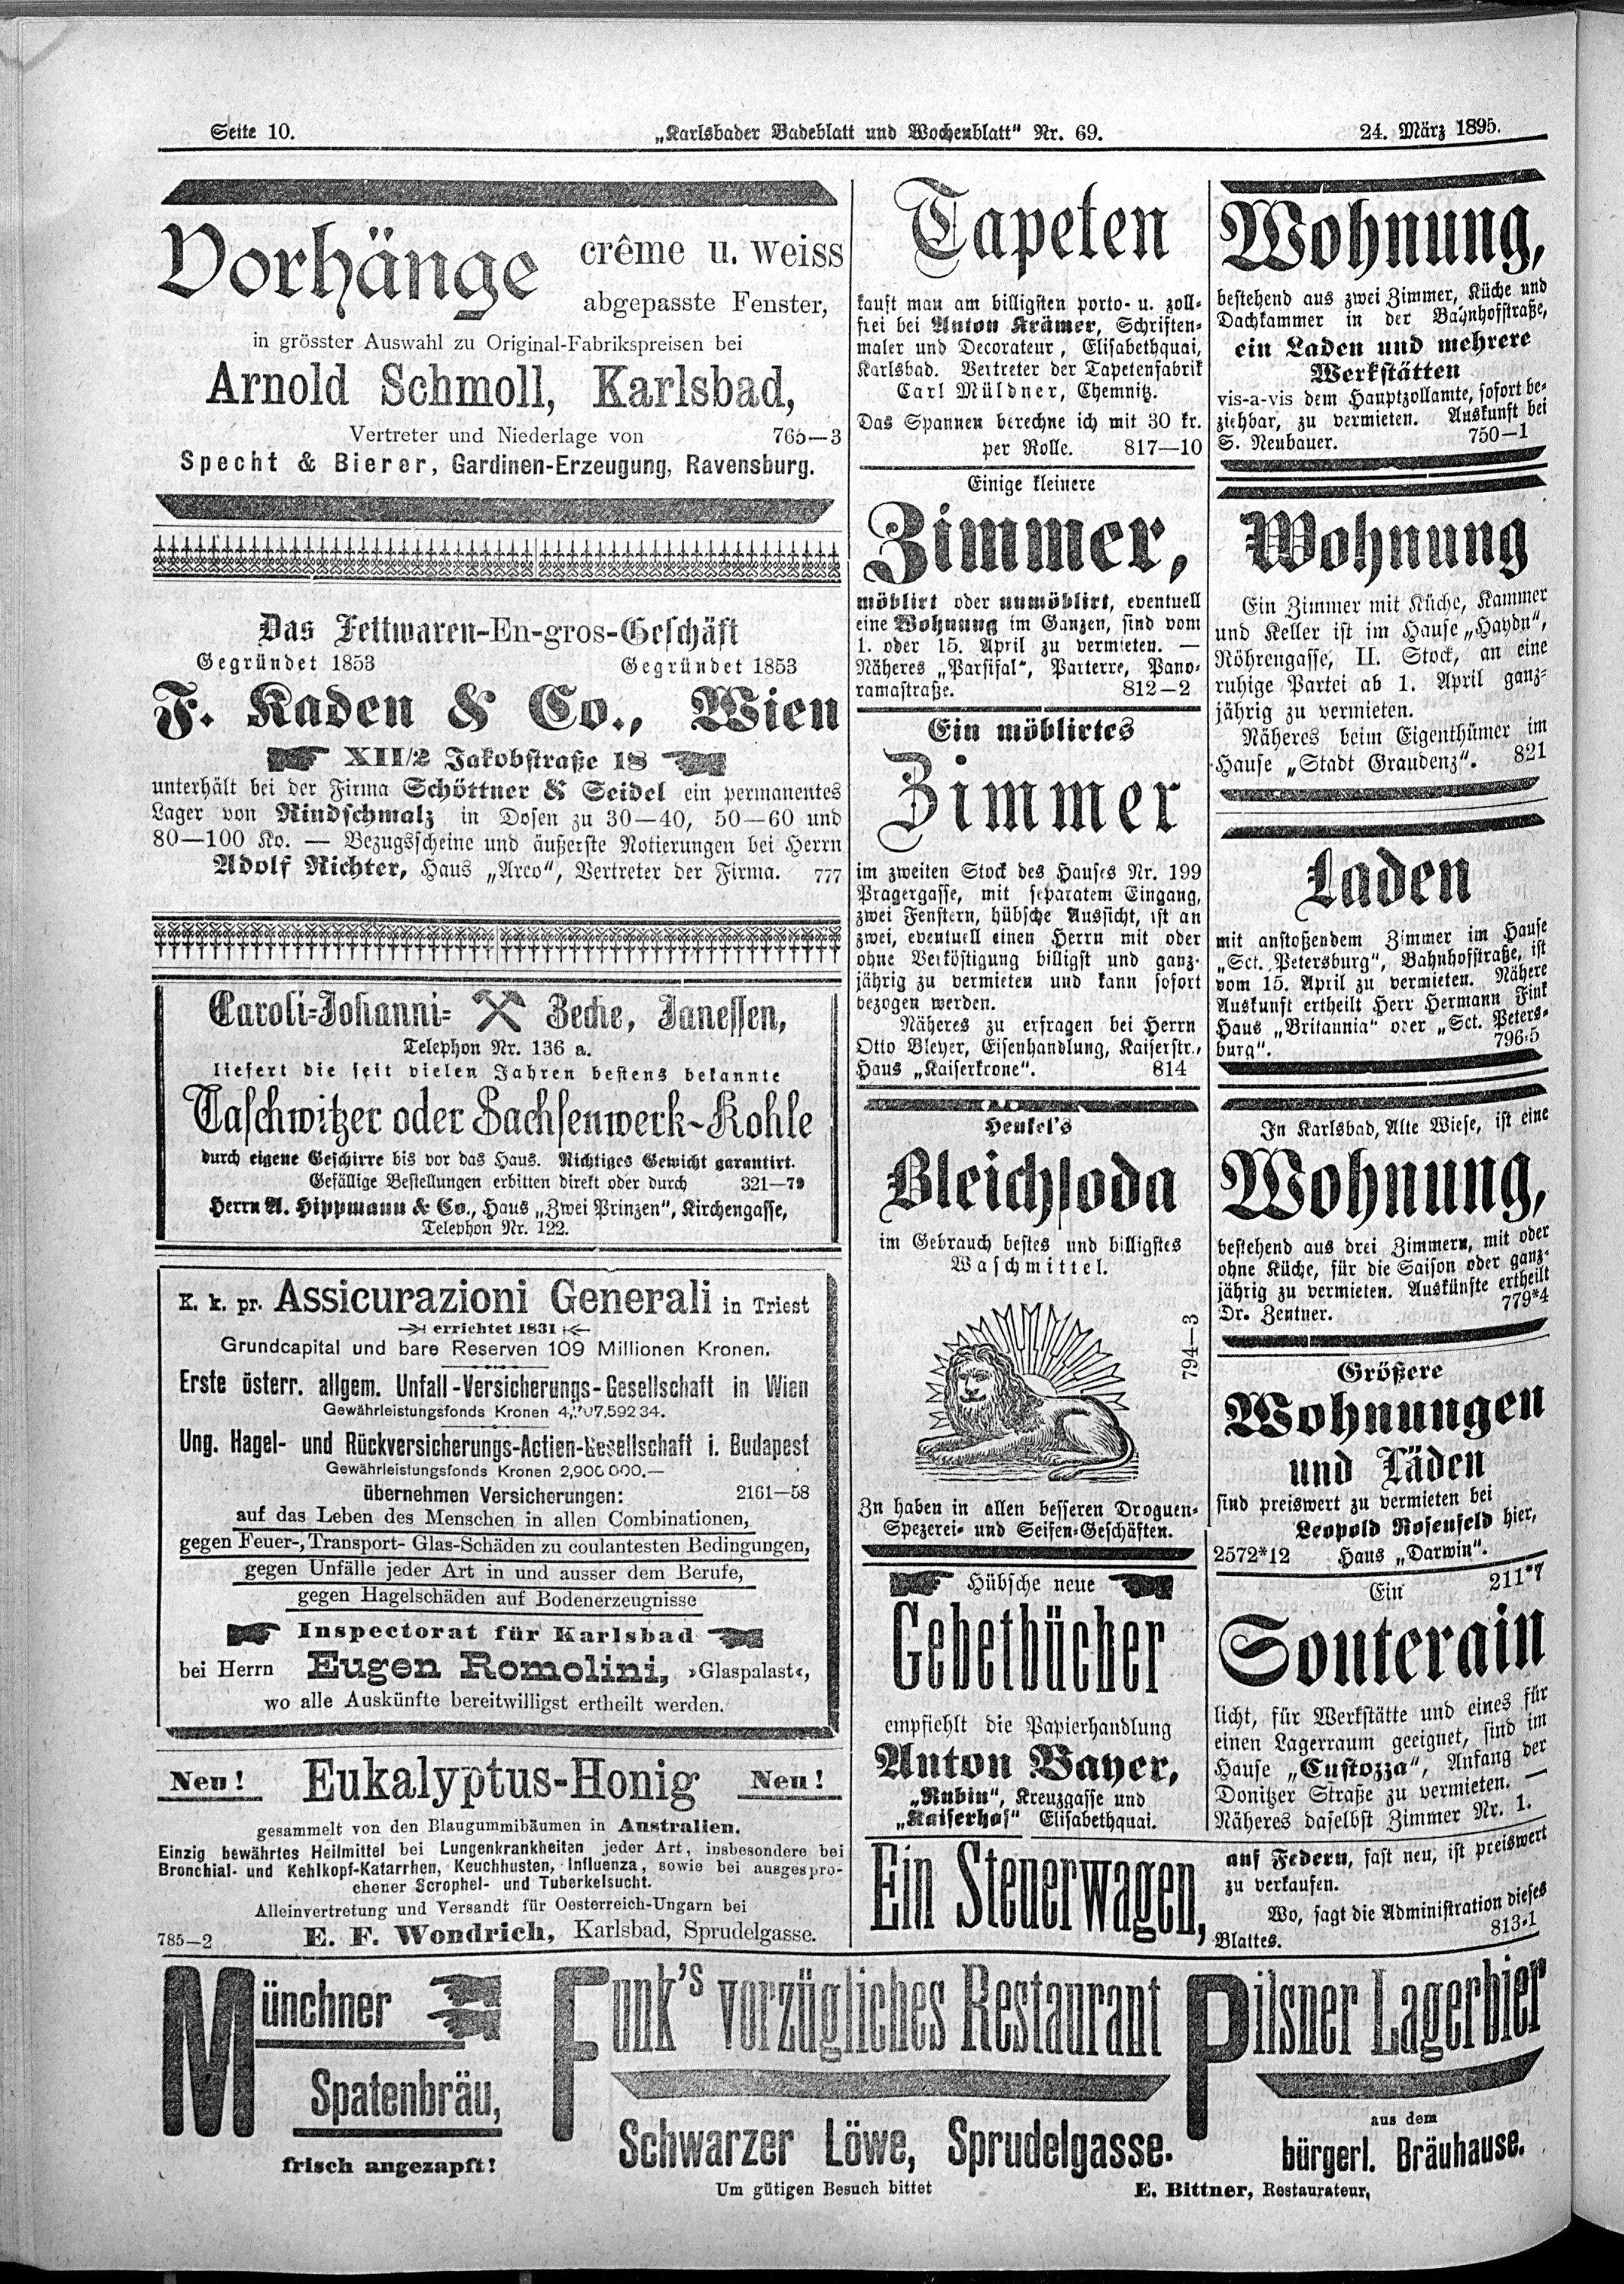 6. karlsbader-badeblatt-1895-03-24-n69_3000